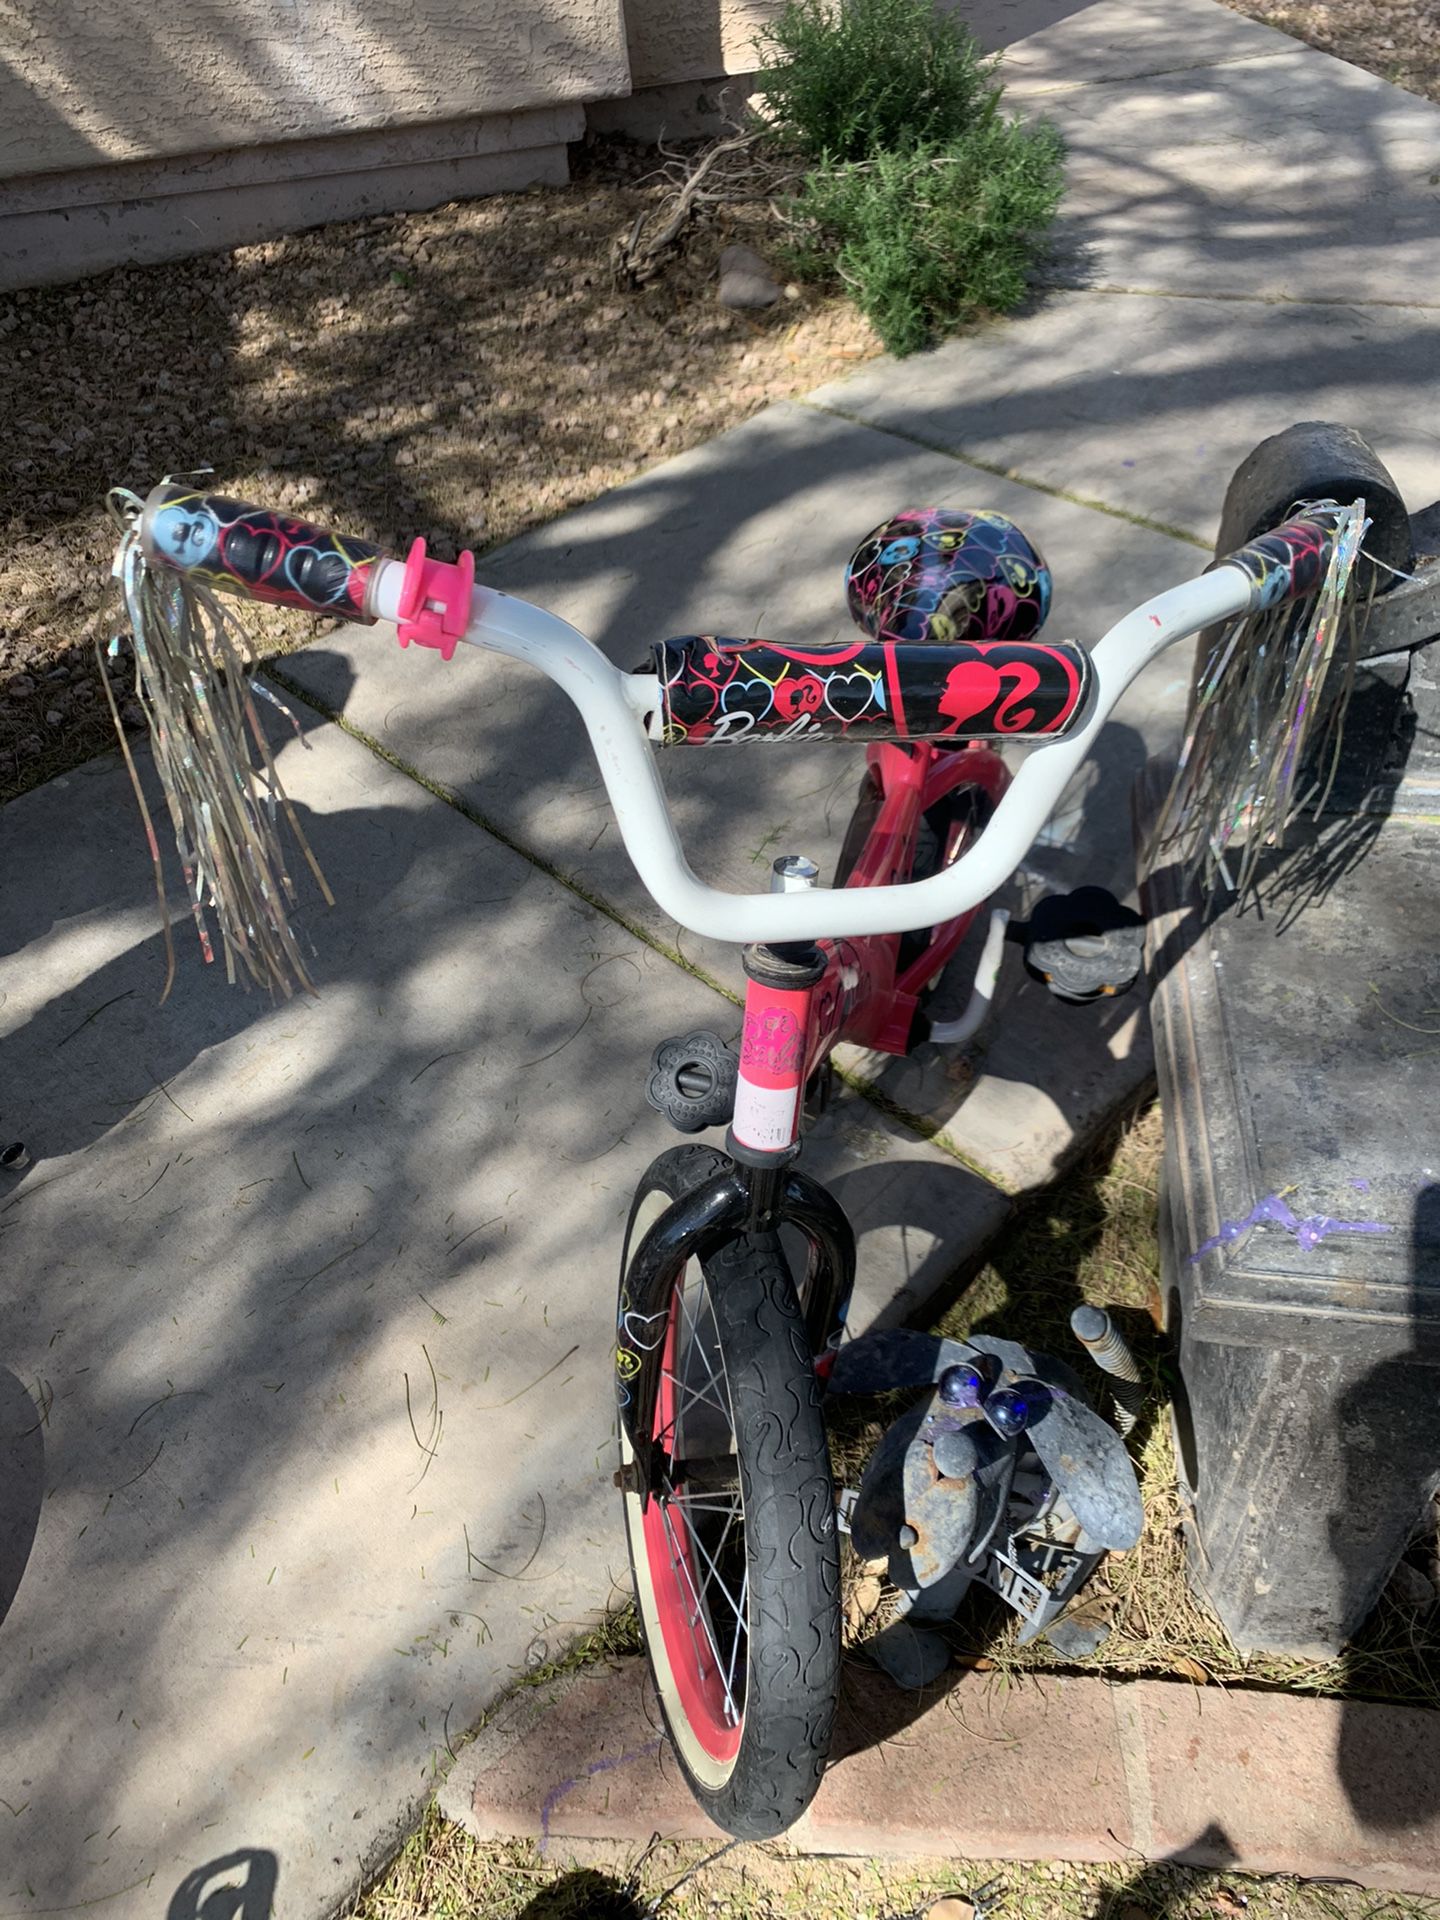 Bike for girl